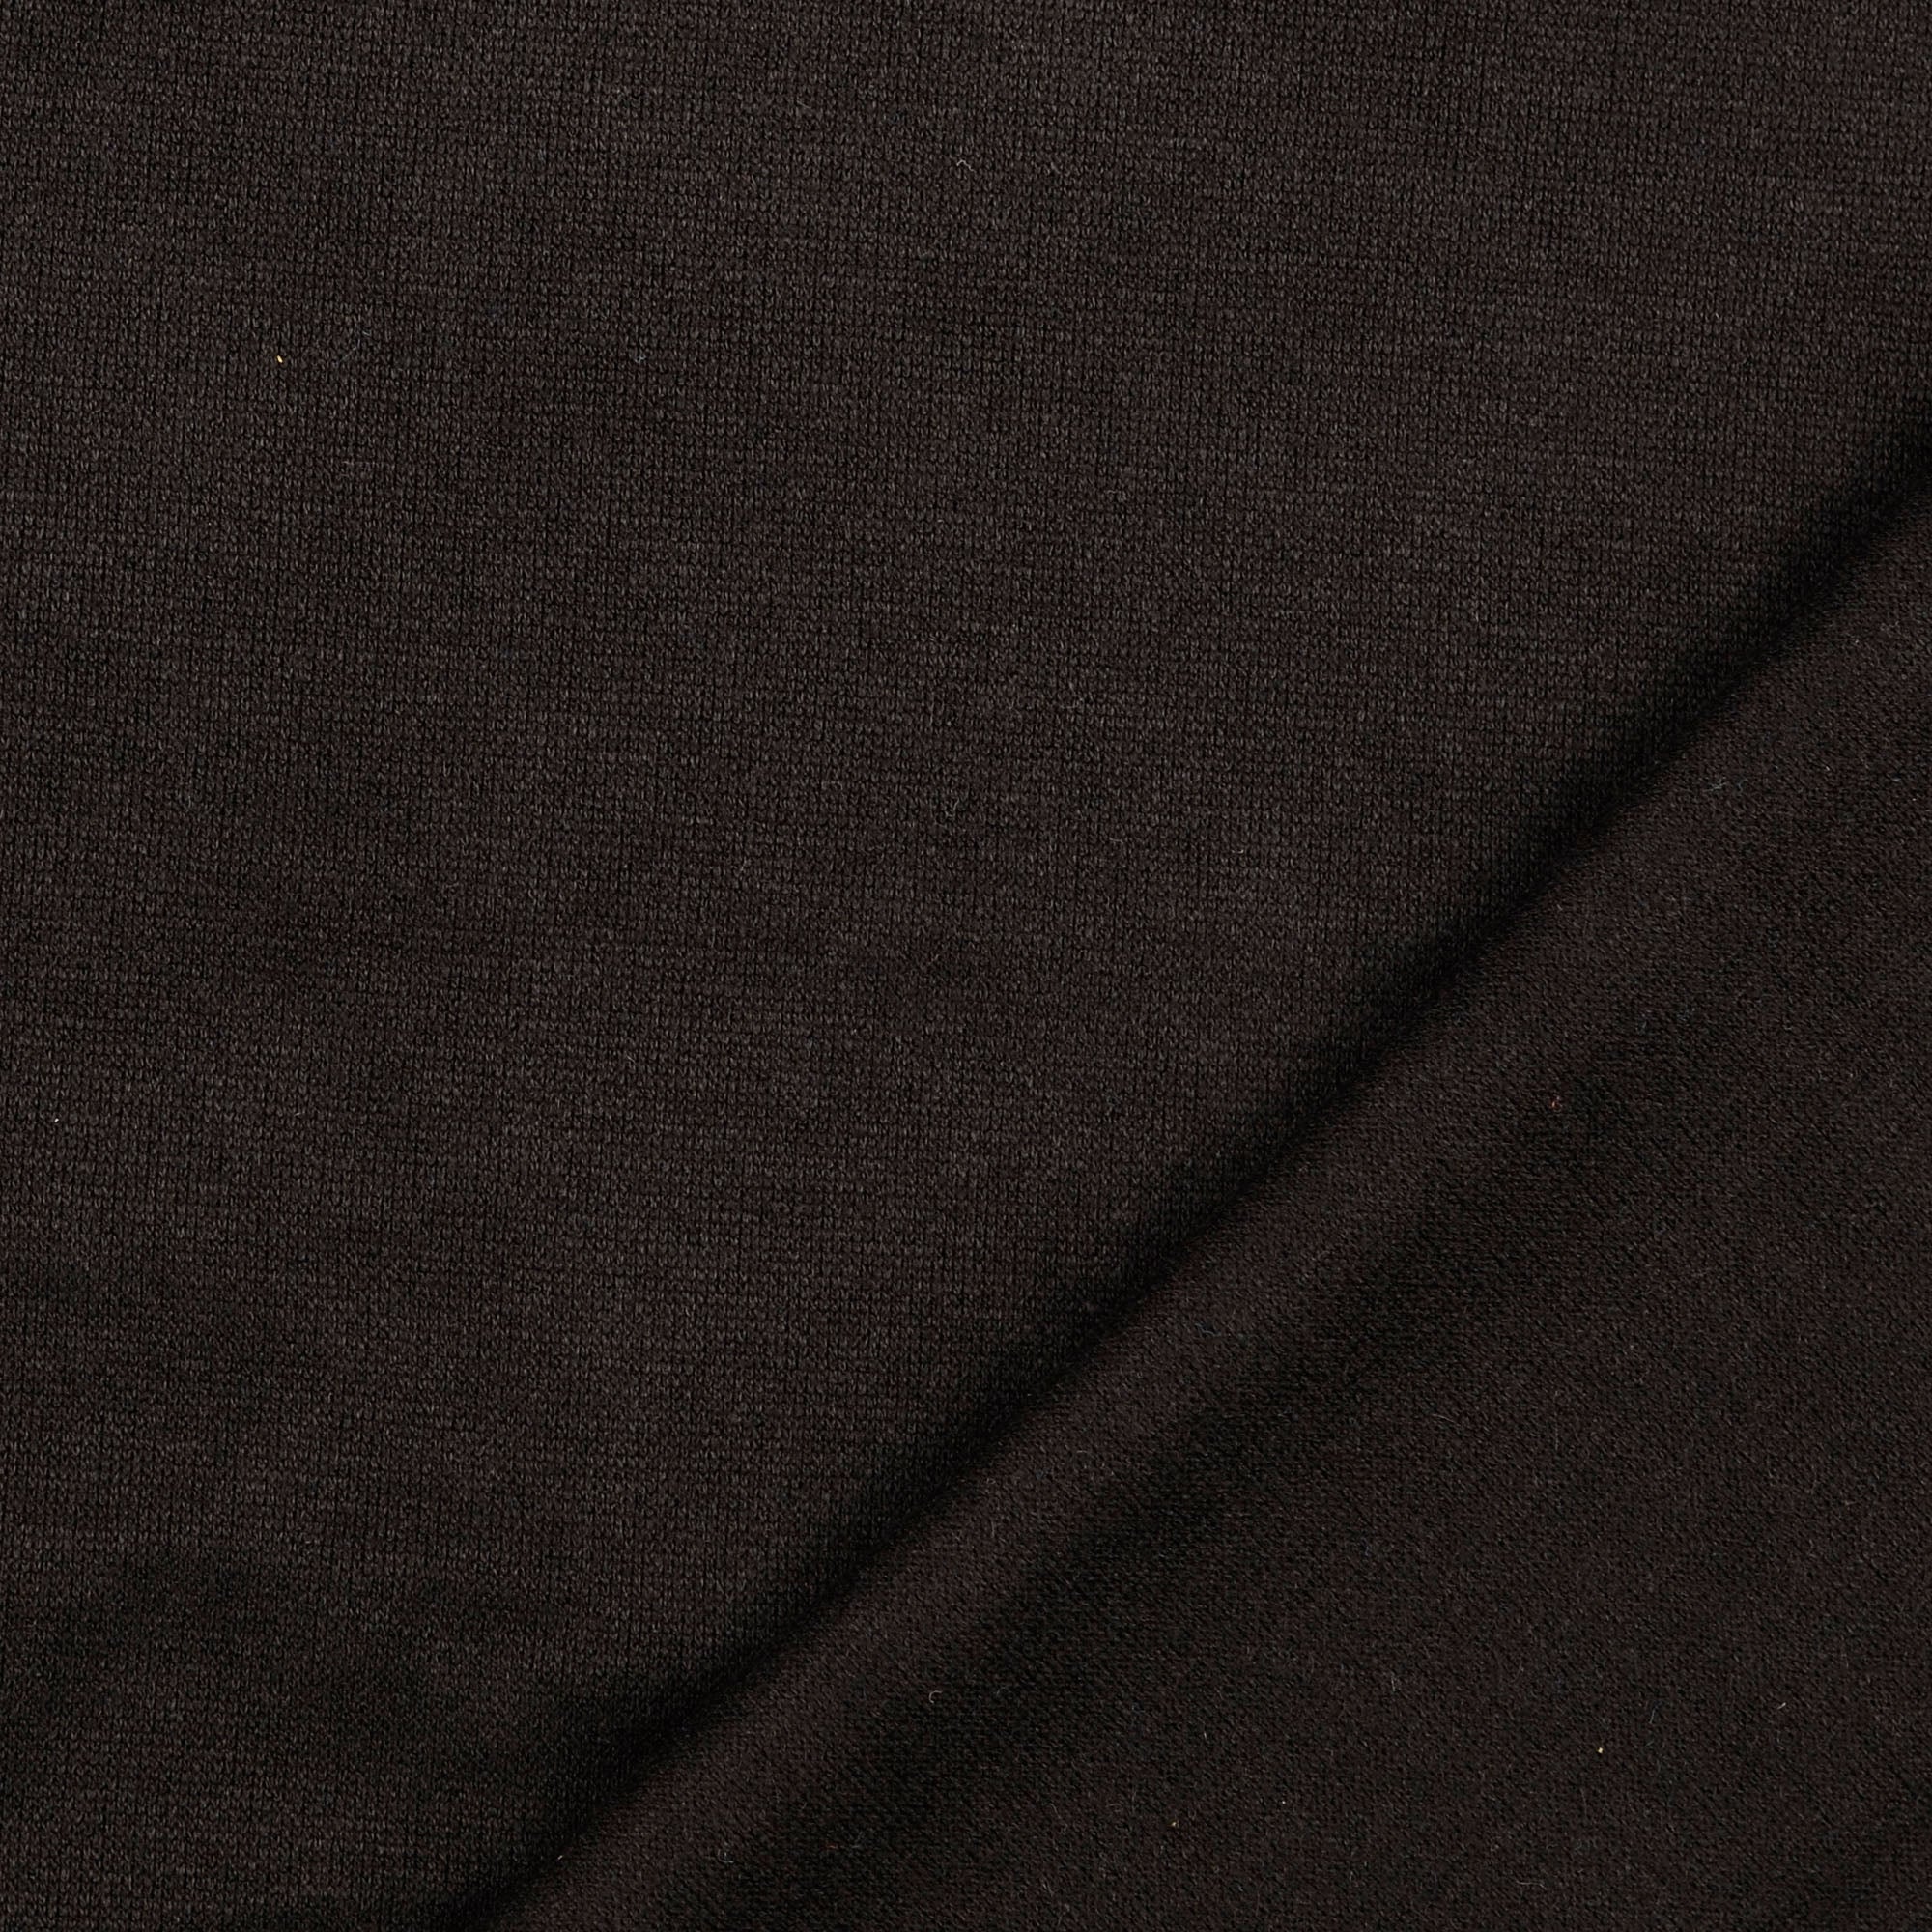 Snug Viscose Blend Sweater Knit in Black